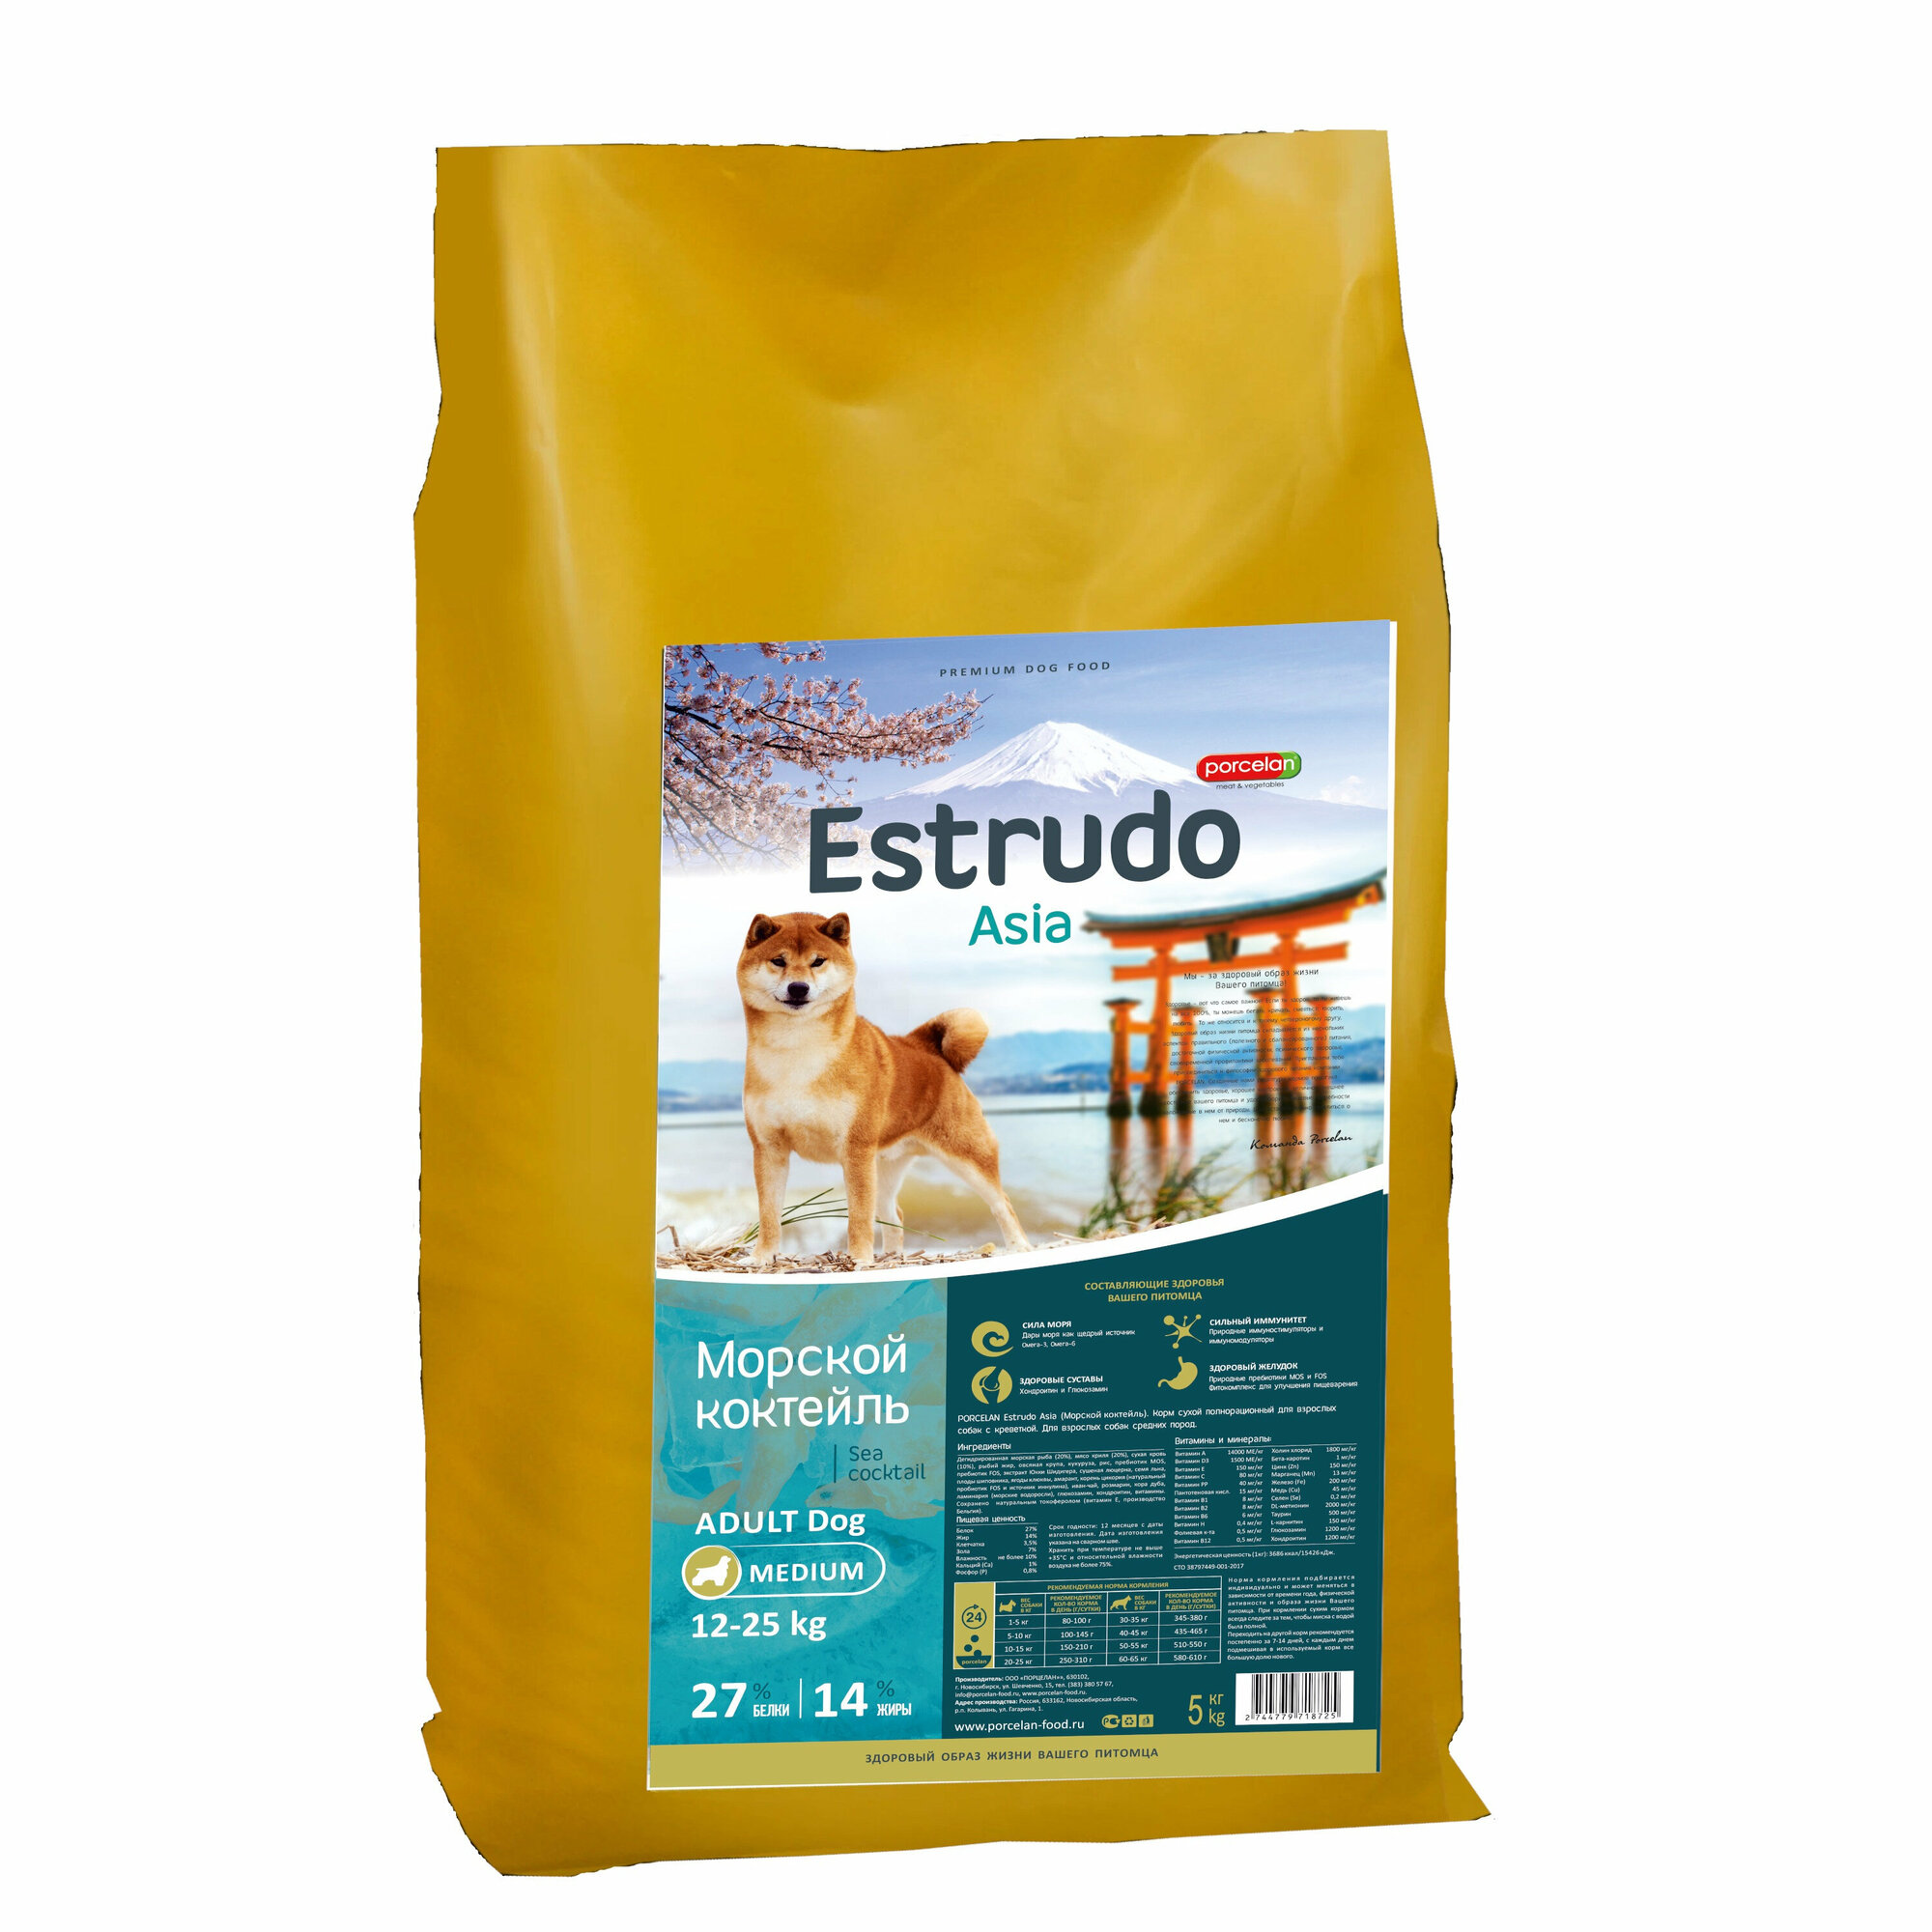 Сухой корм Estrudo Asia (Морской коктейль) для взрослых собак средних пород, 5 кг